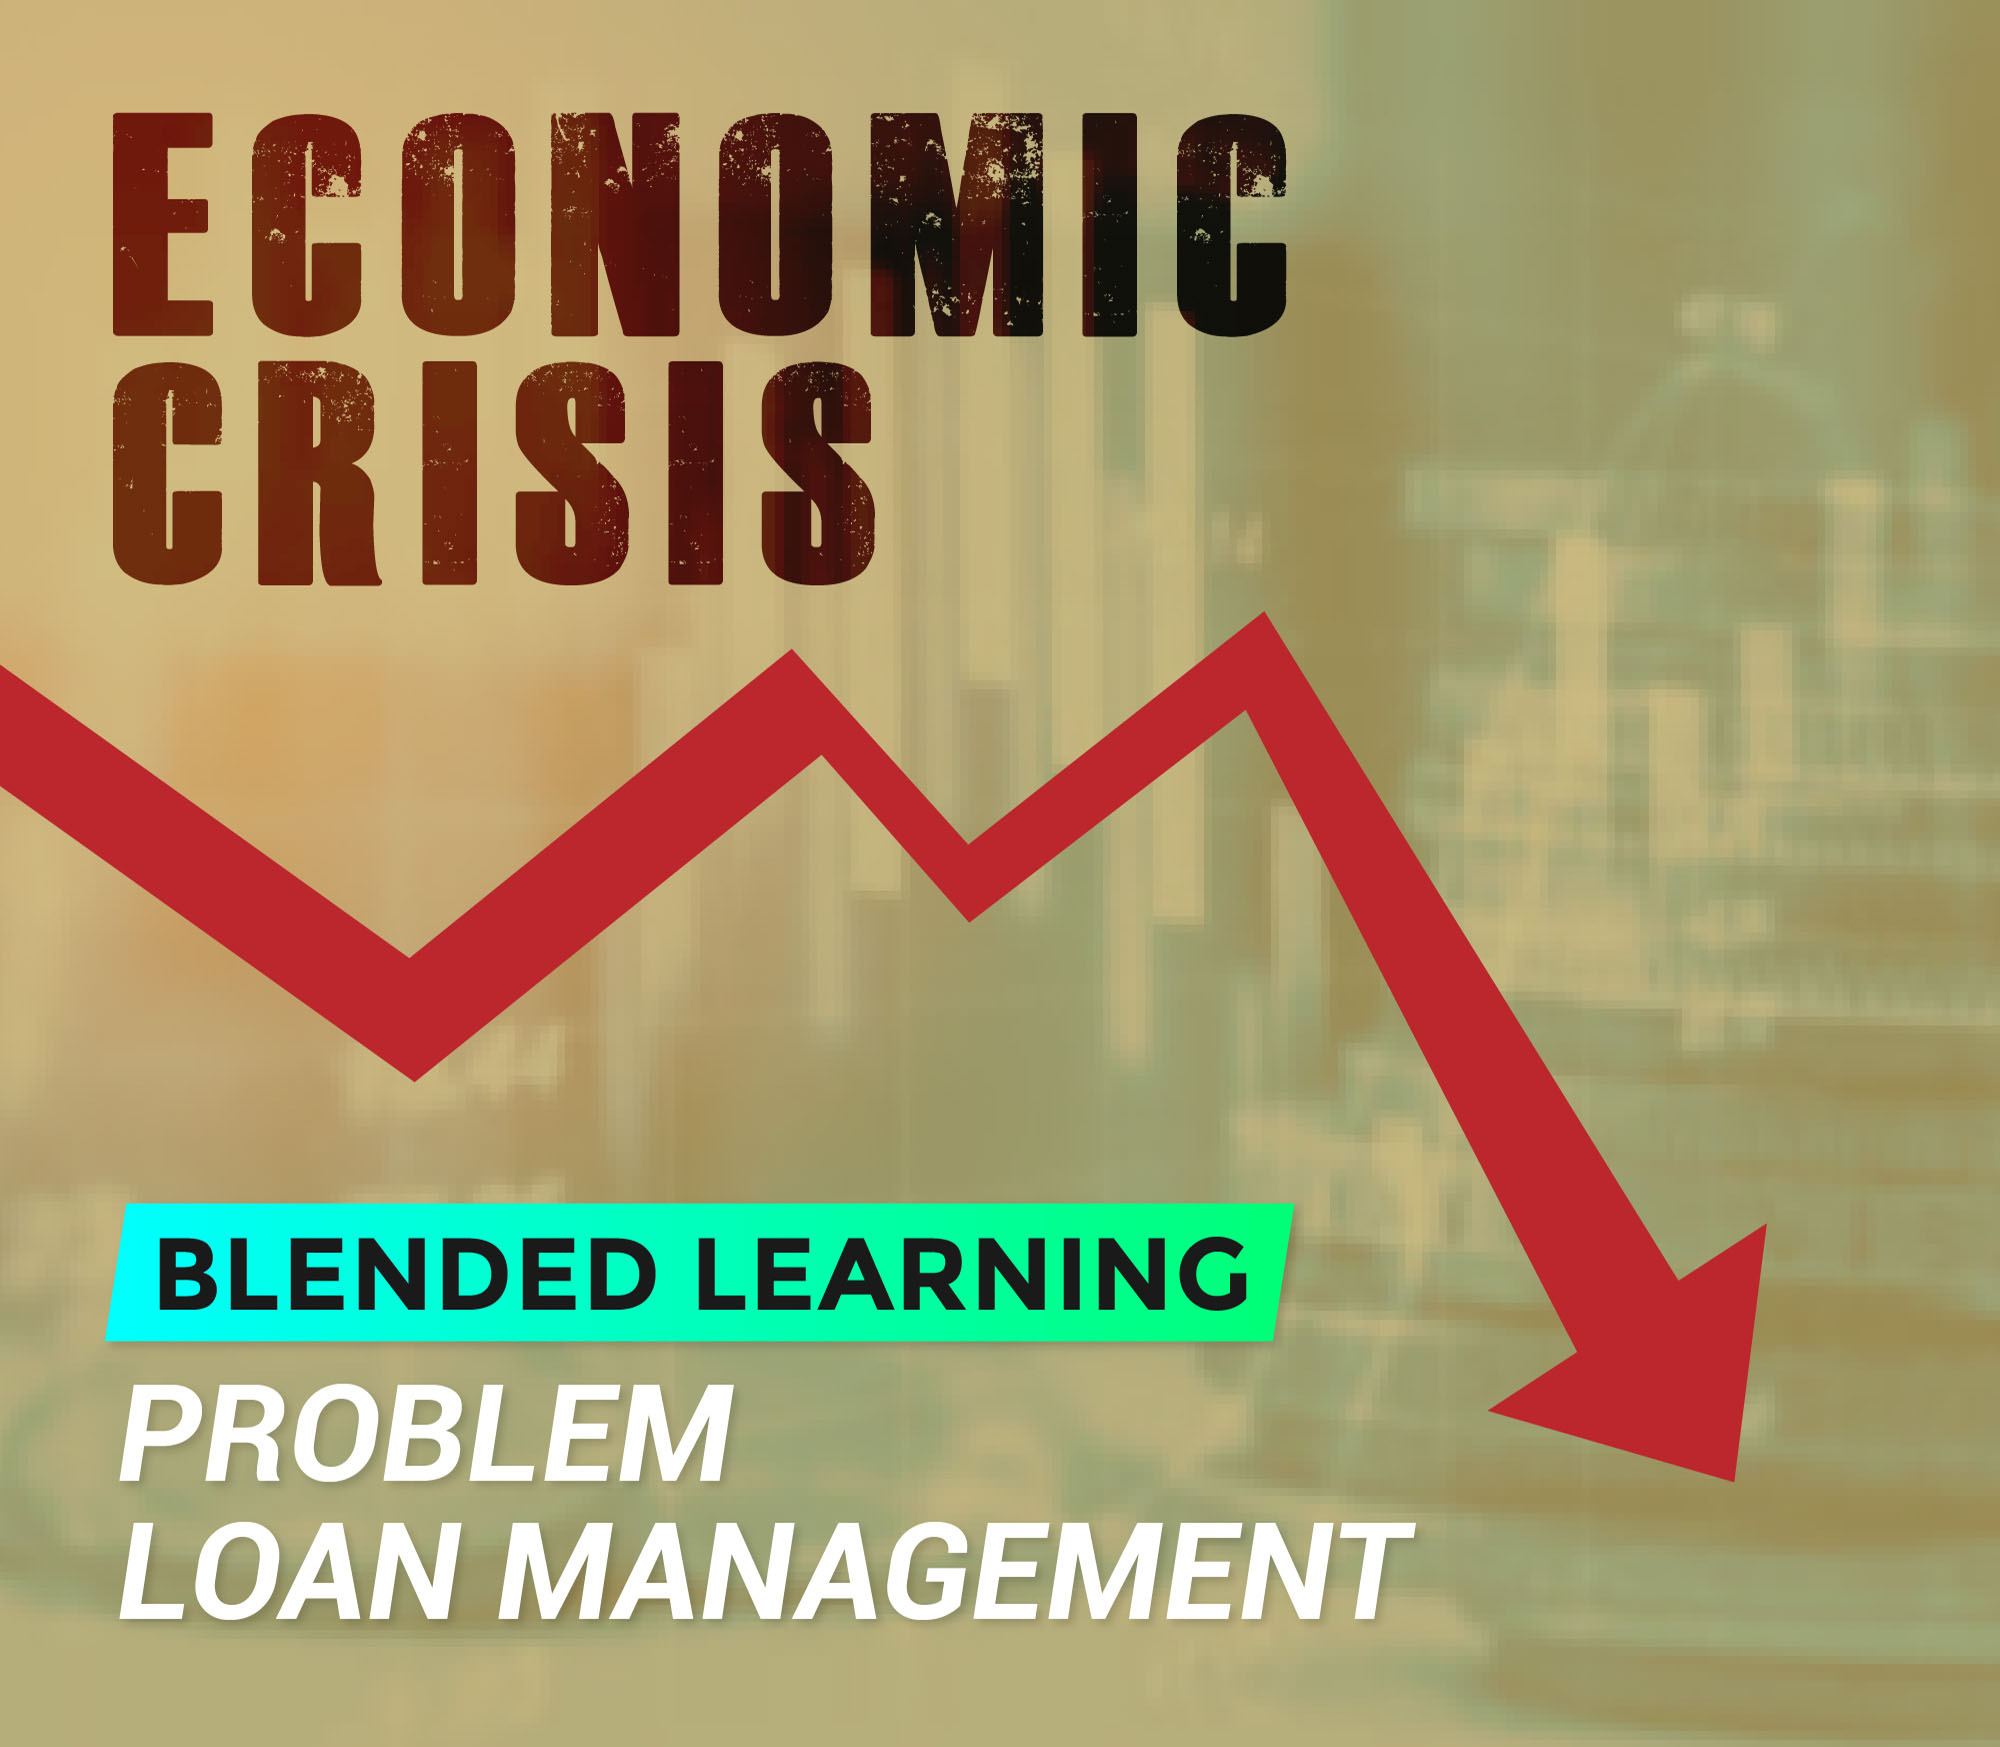 Problem loan management